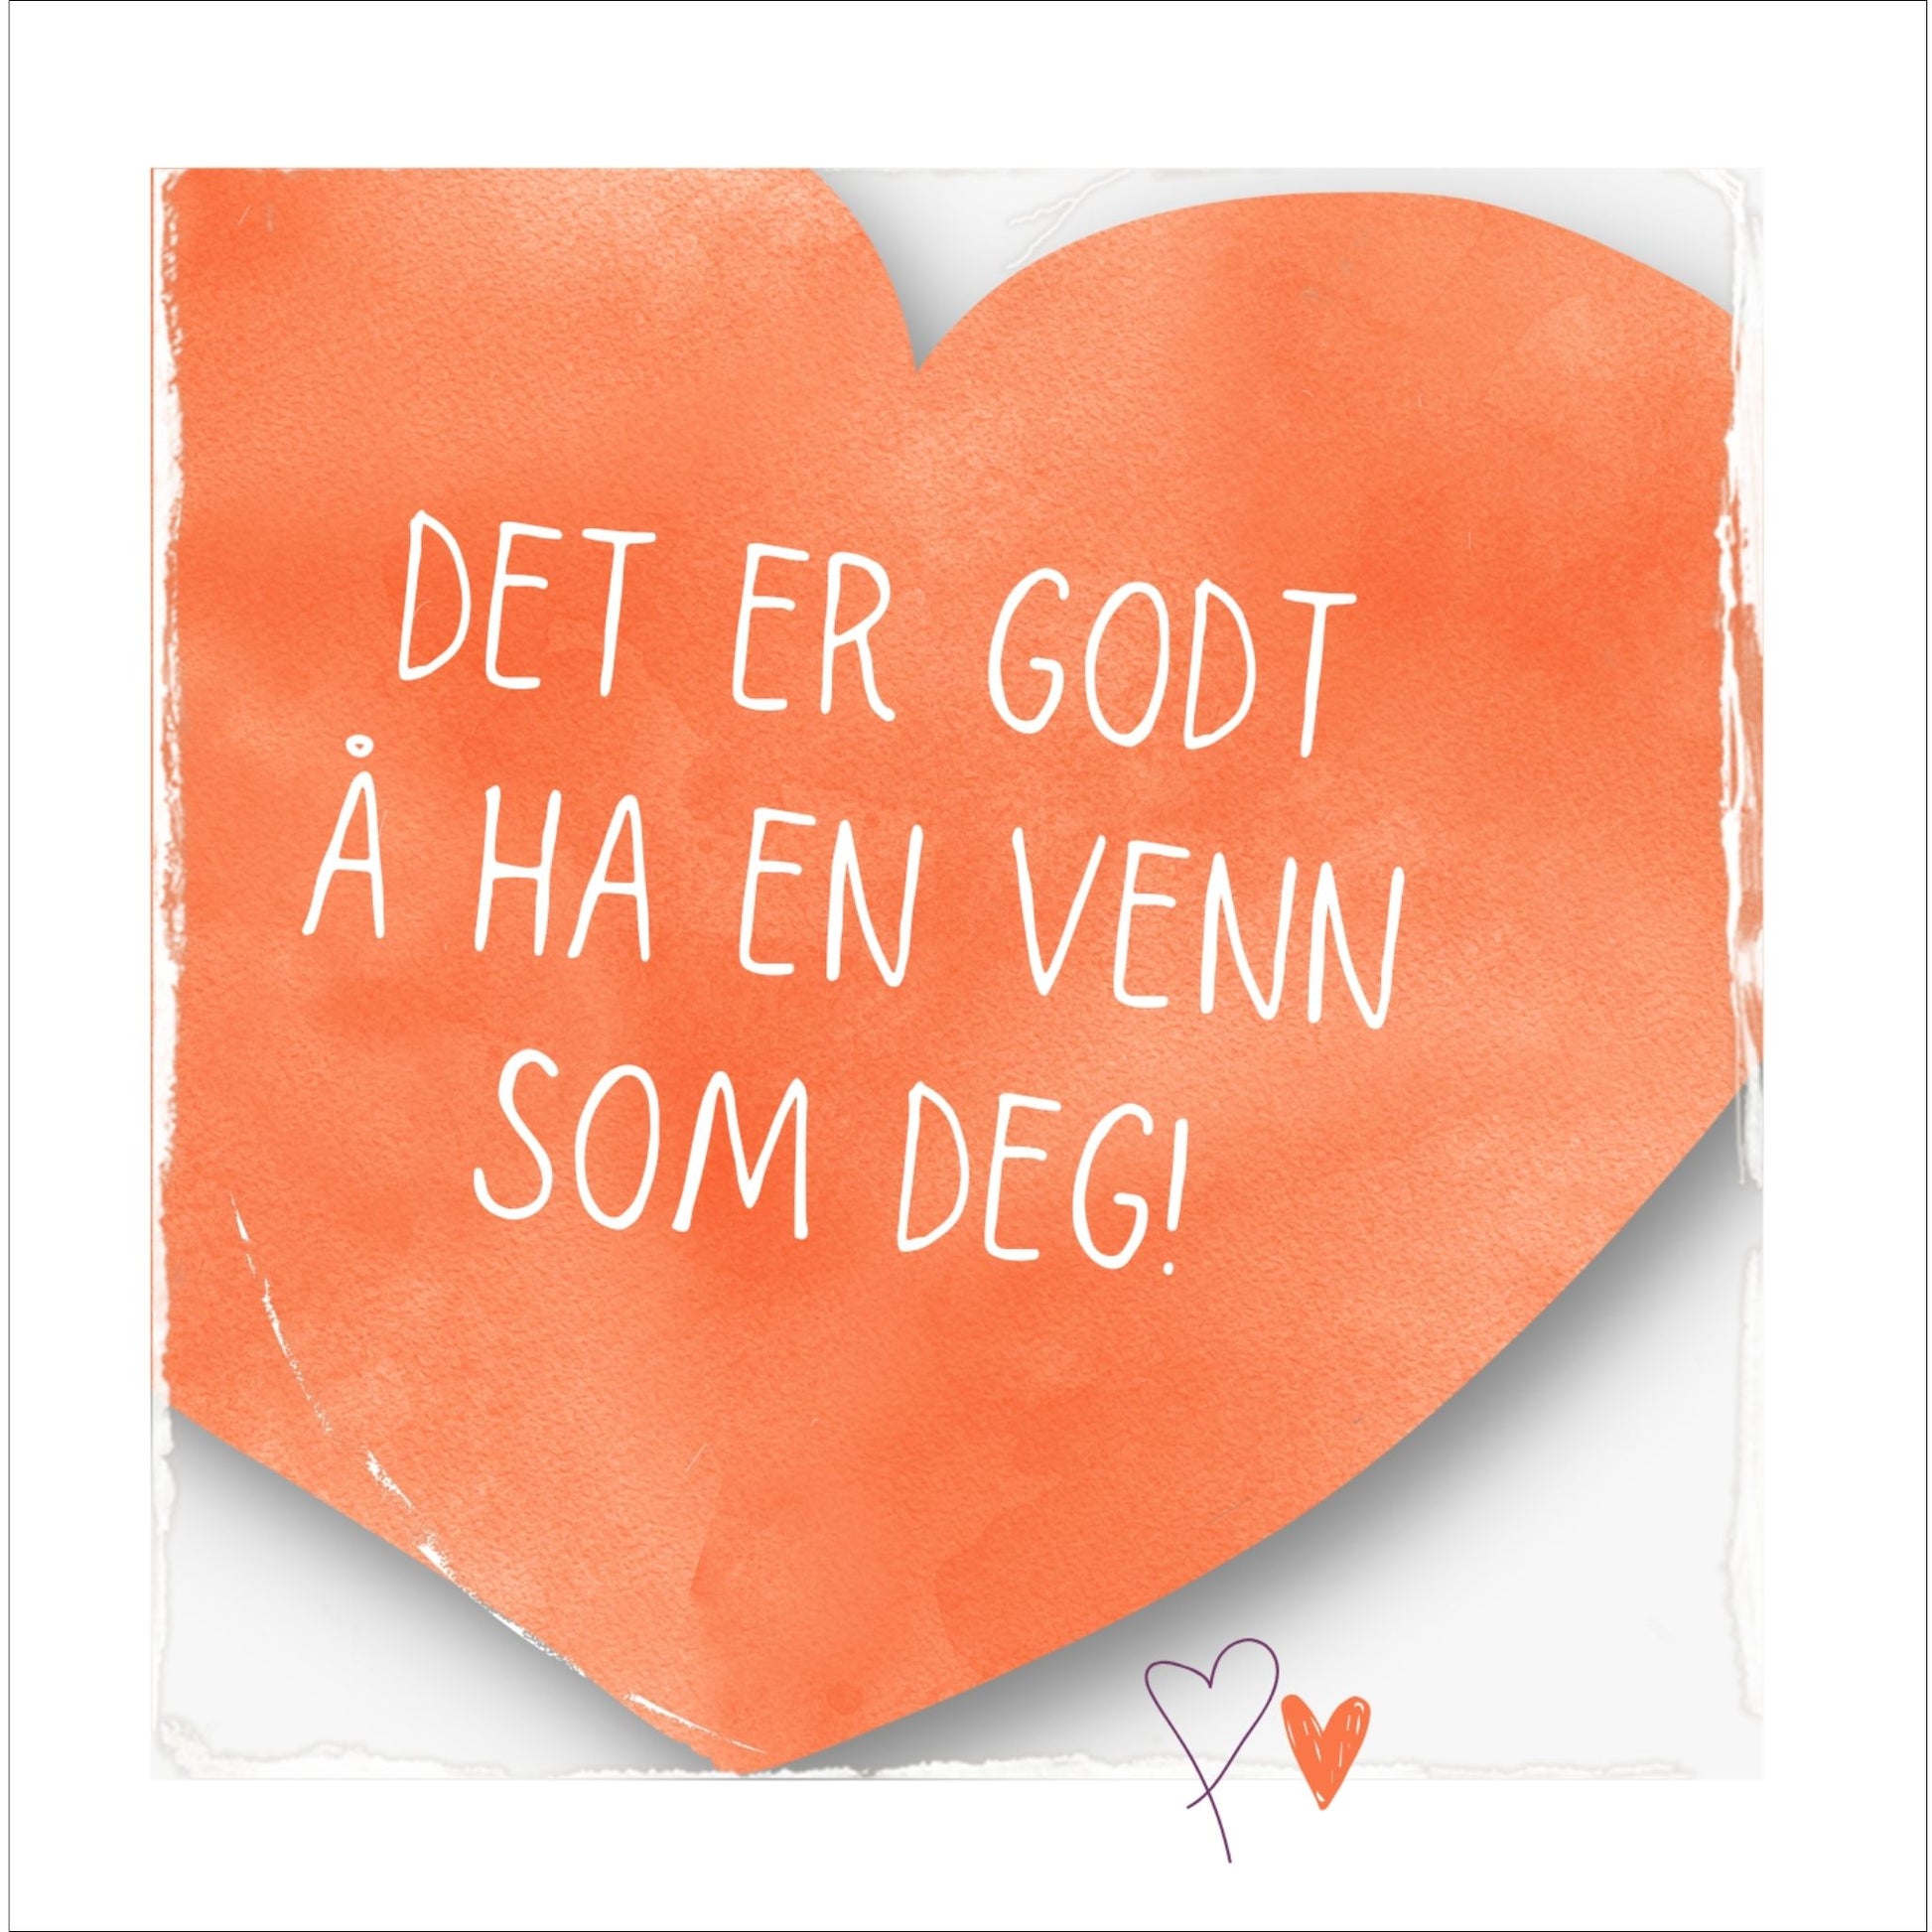 Plakat med oransje hjerte og tekst "Det er godt å ha en venn som deg". Med hvit kant på 1,5 cm. 